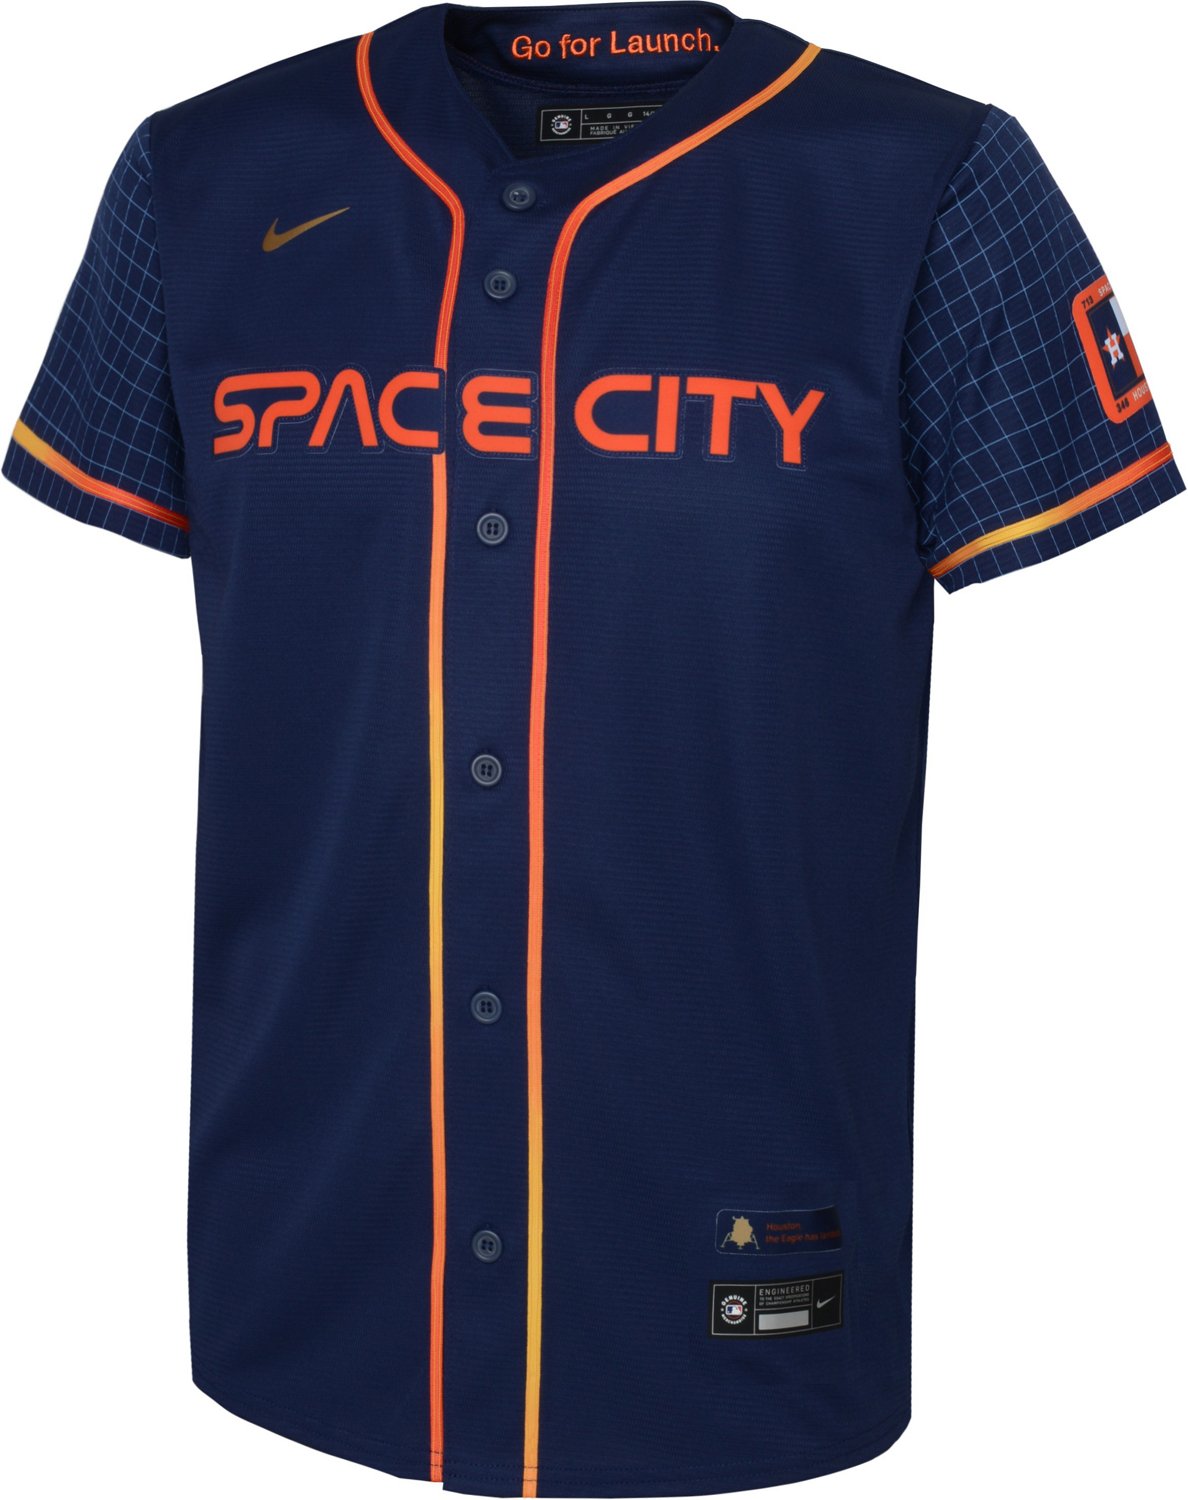 astro space city uniforms